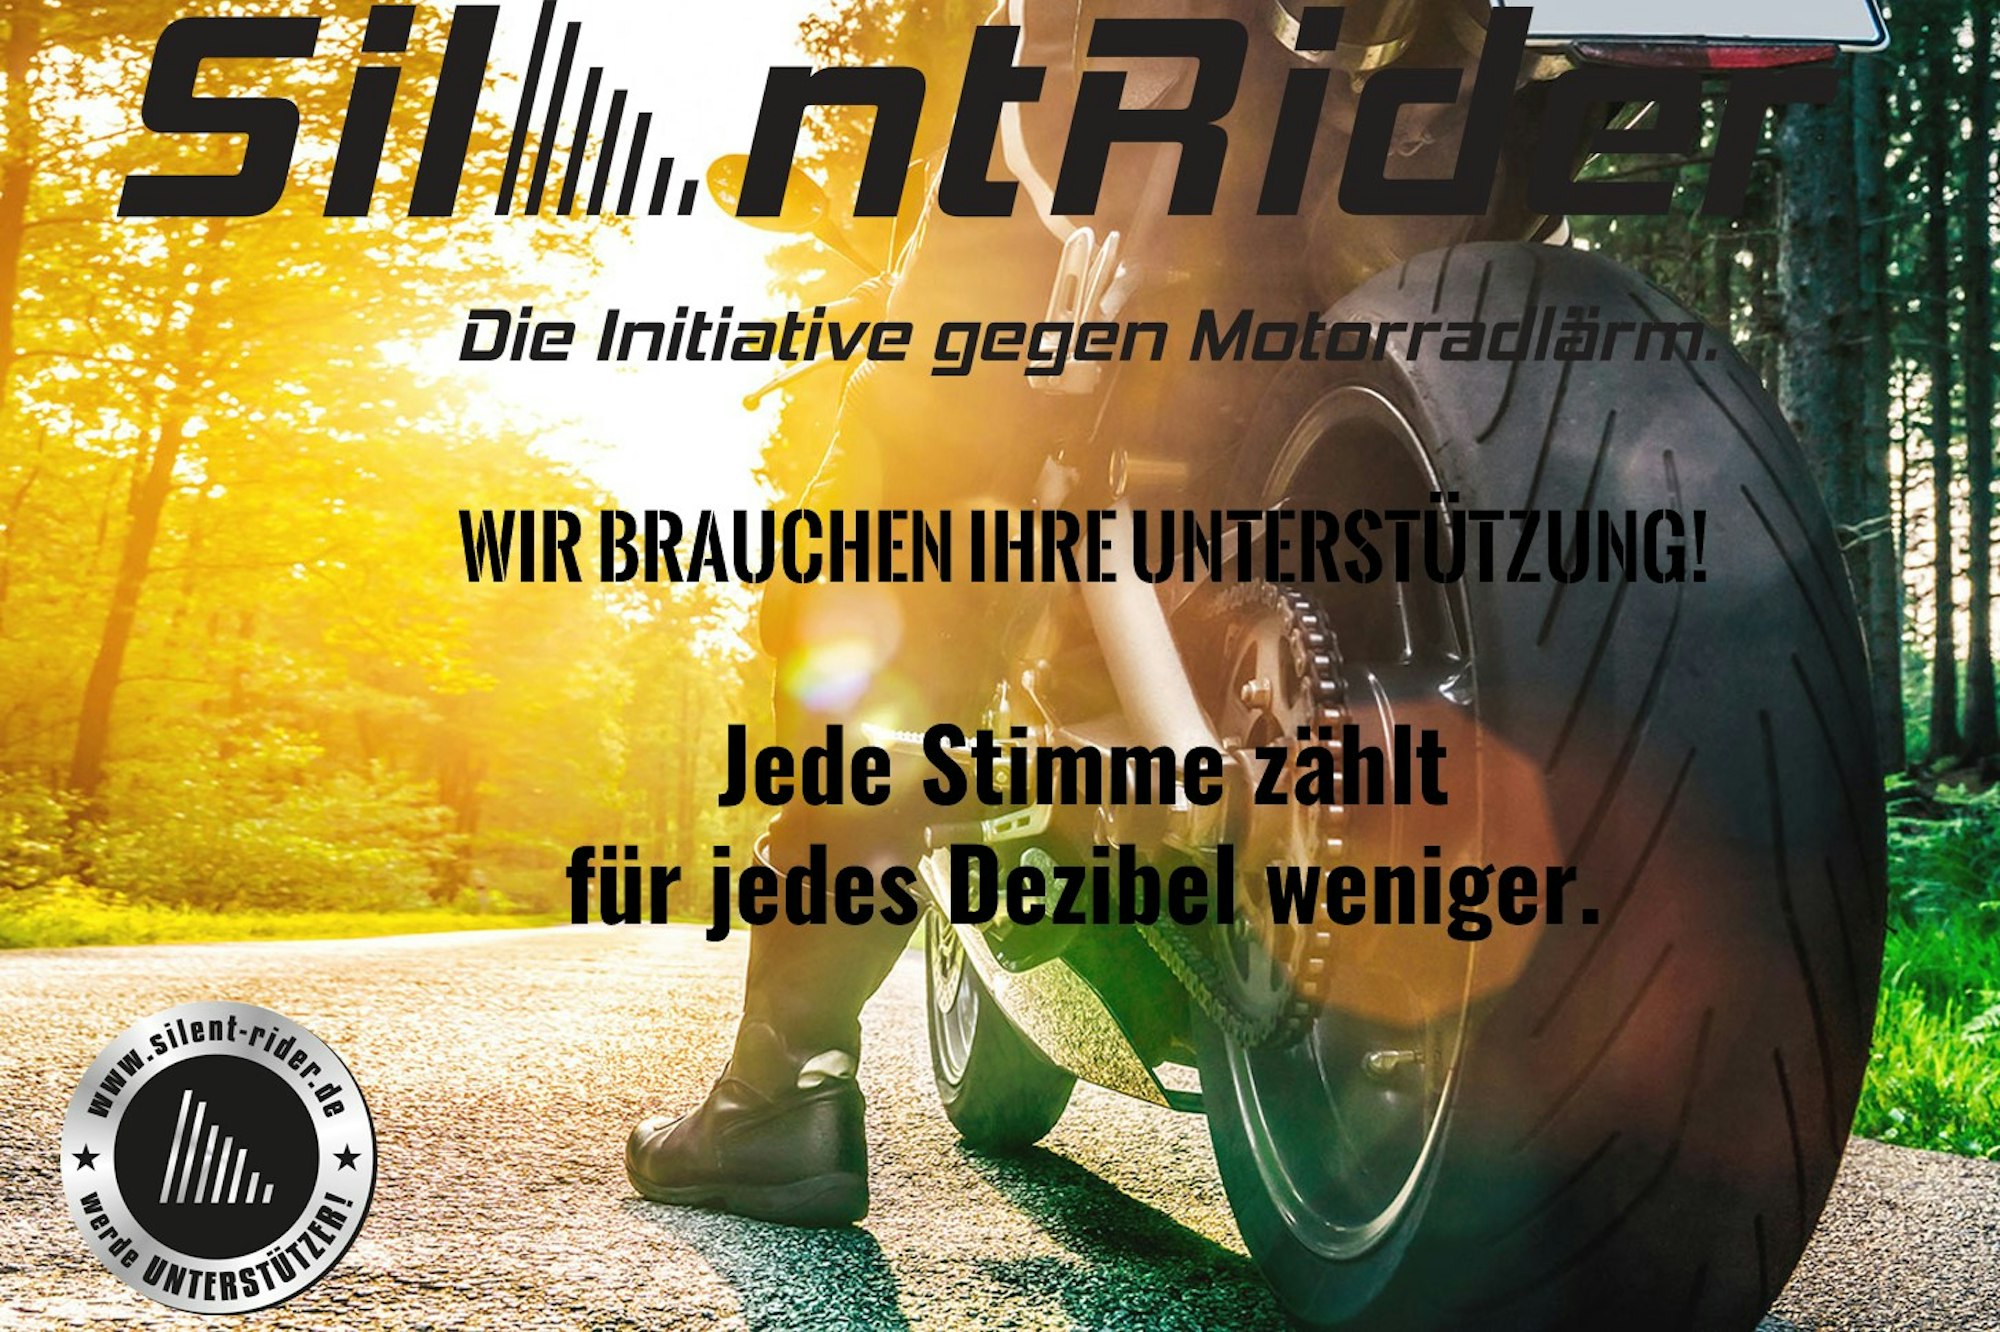 Motorradlärm_Kampagne_Ahrweiler